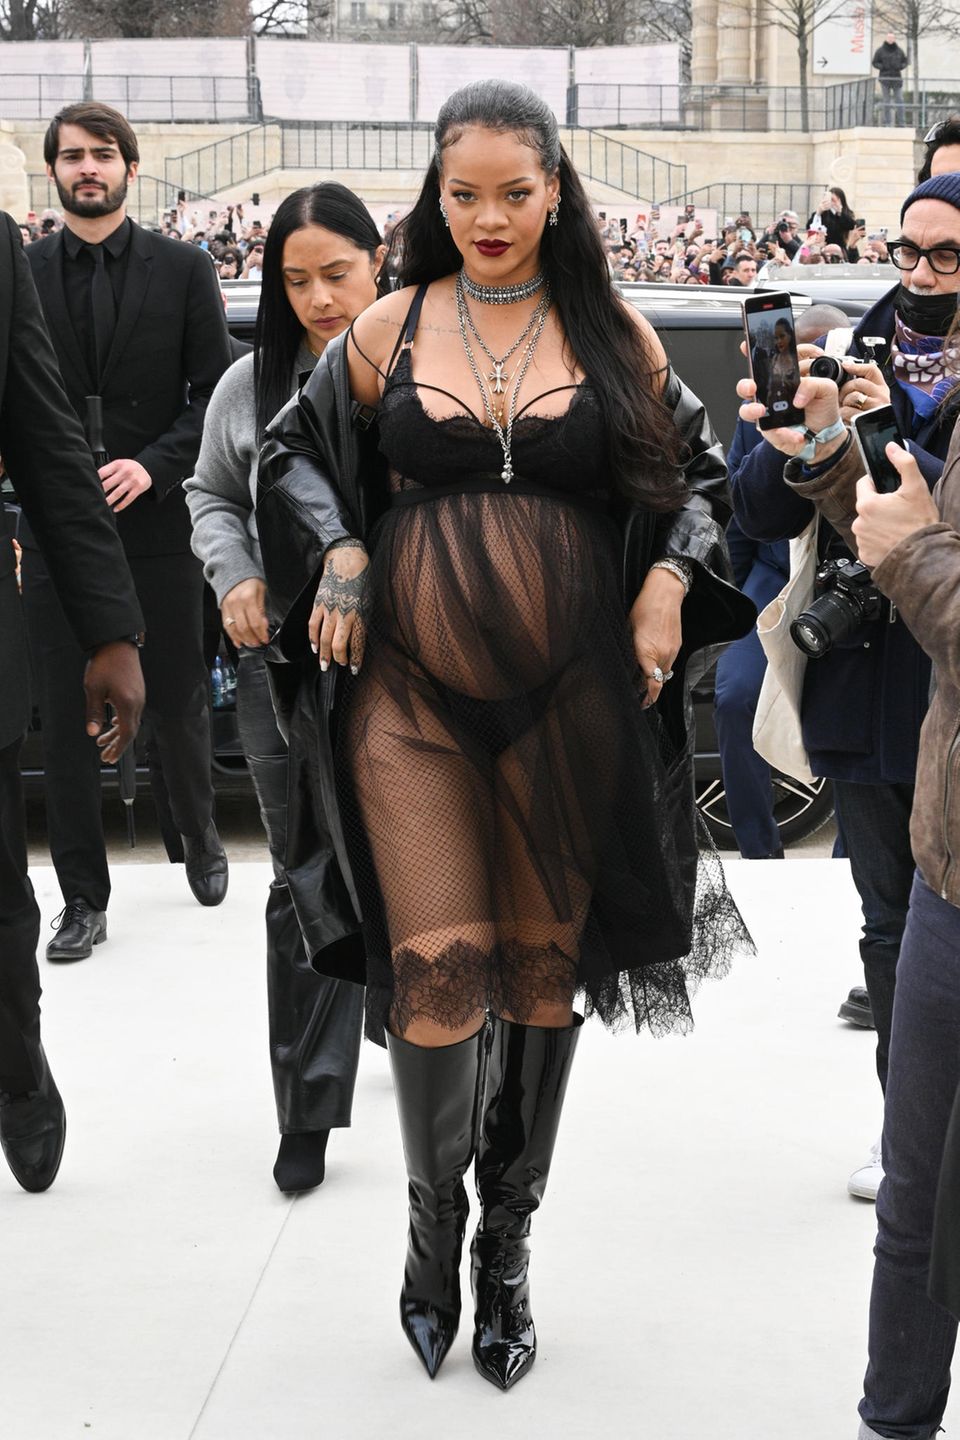 Das Verlangen nach zarter Spitze scheint in der französischen Modemetropole in der Luft zu liegen. Rihanna sorgt in demselben Kleid nur wenige Tage zuvor für einen legendären Moment während der Pariser Fashion Week. Für die Show von Dior umhüllt die schwangere Sängerin ihren Babybauch lediglich mit dem durchscheinenden Babydoll-Kleid, wählt jedoch andere Dessous als Ann-Kathrin Götze.